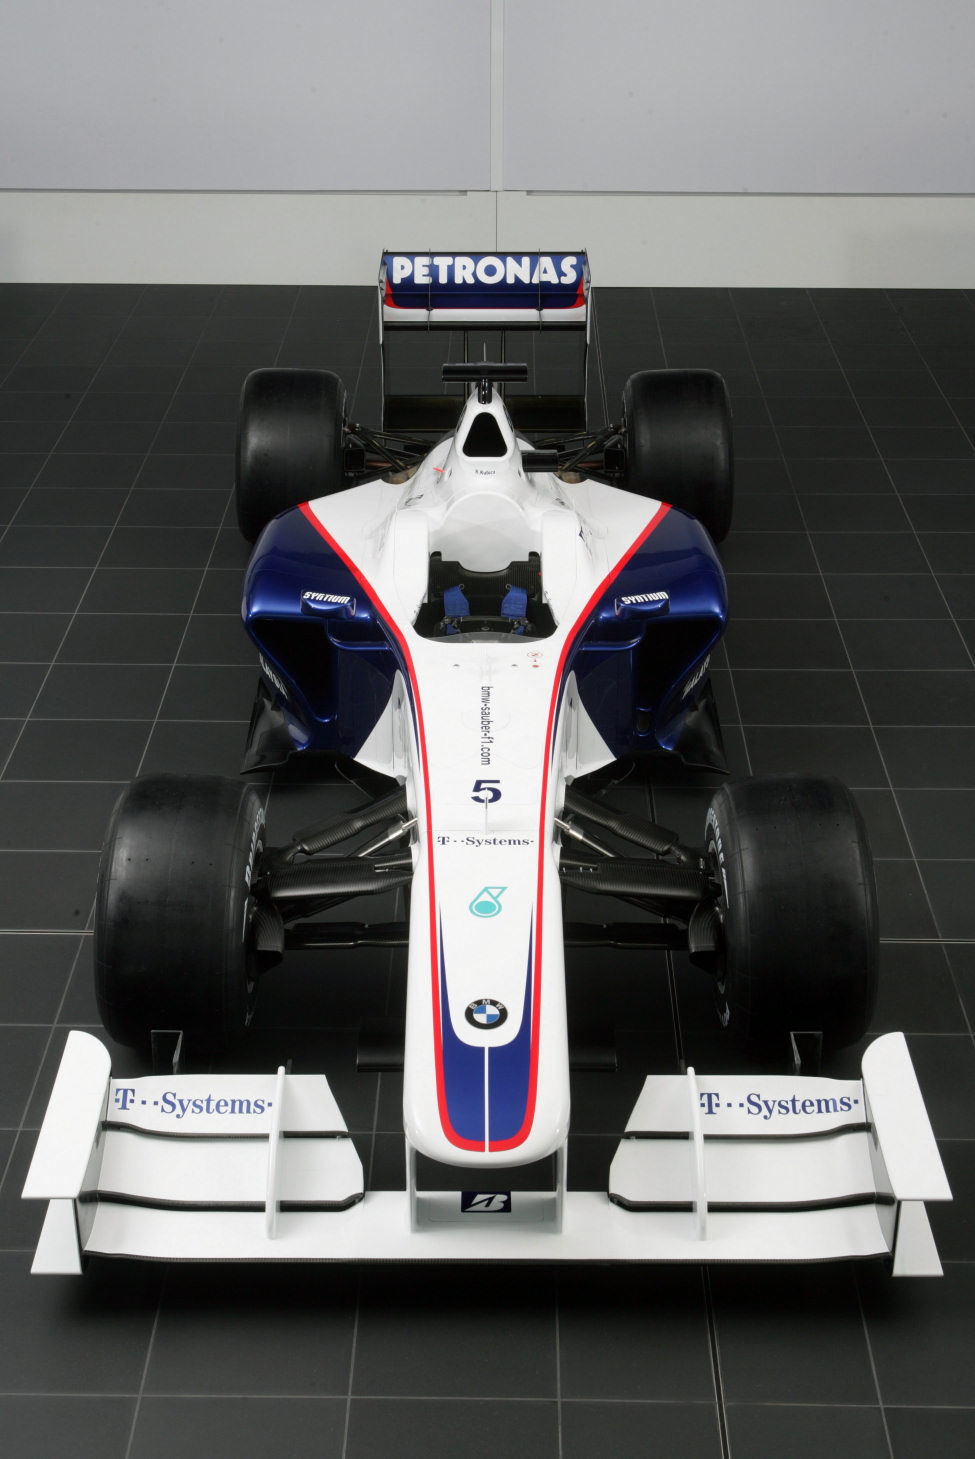 El nuevo BMW Sauber F1.09